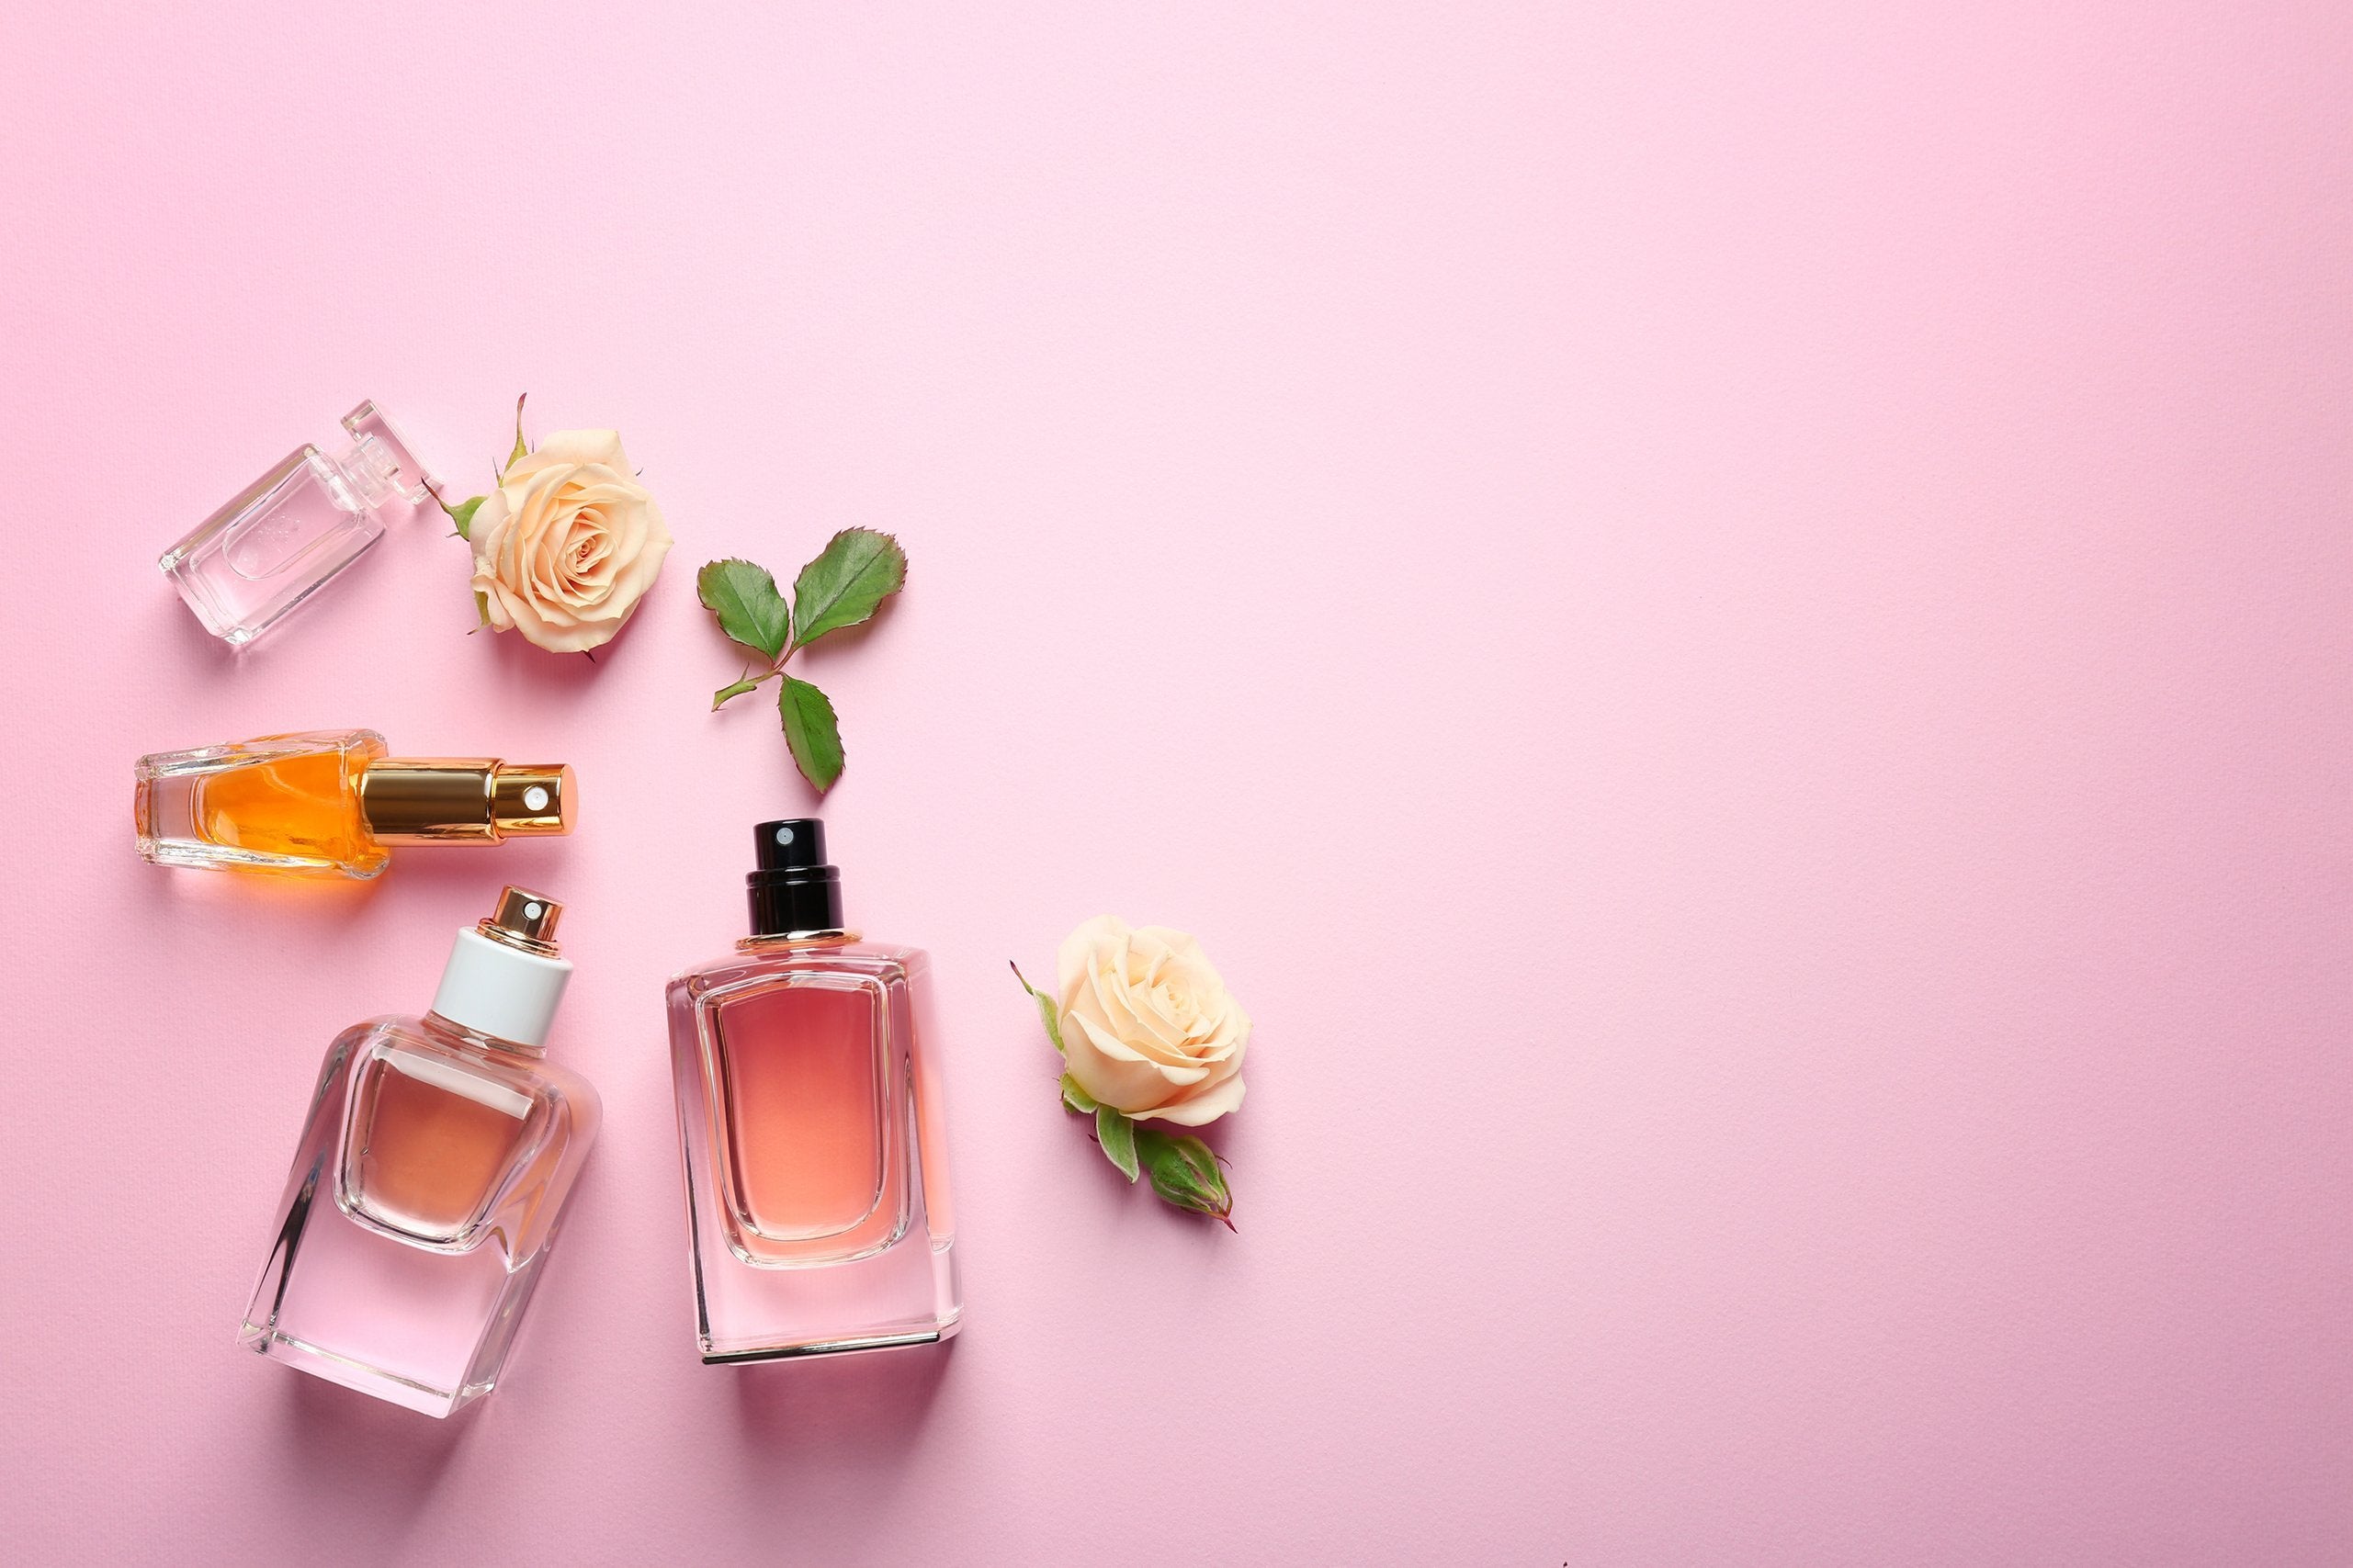 Best Selling Women's Yves Saint Laurent Perfume & Fragrances